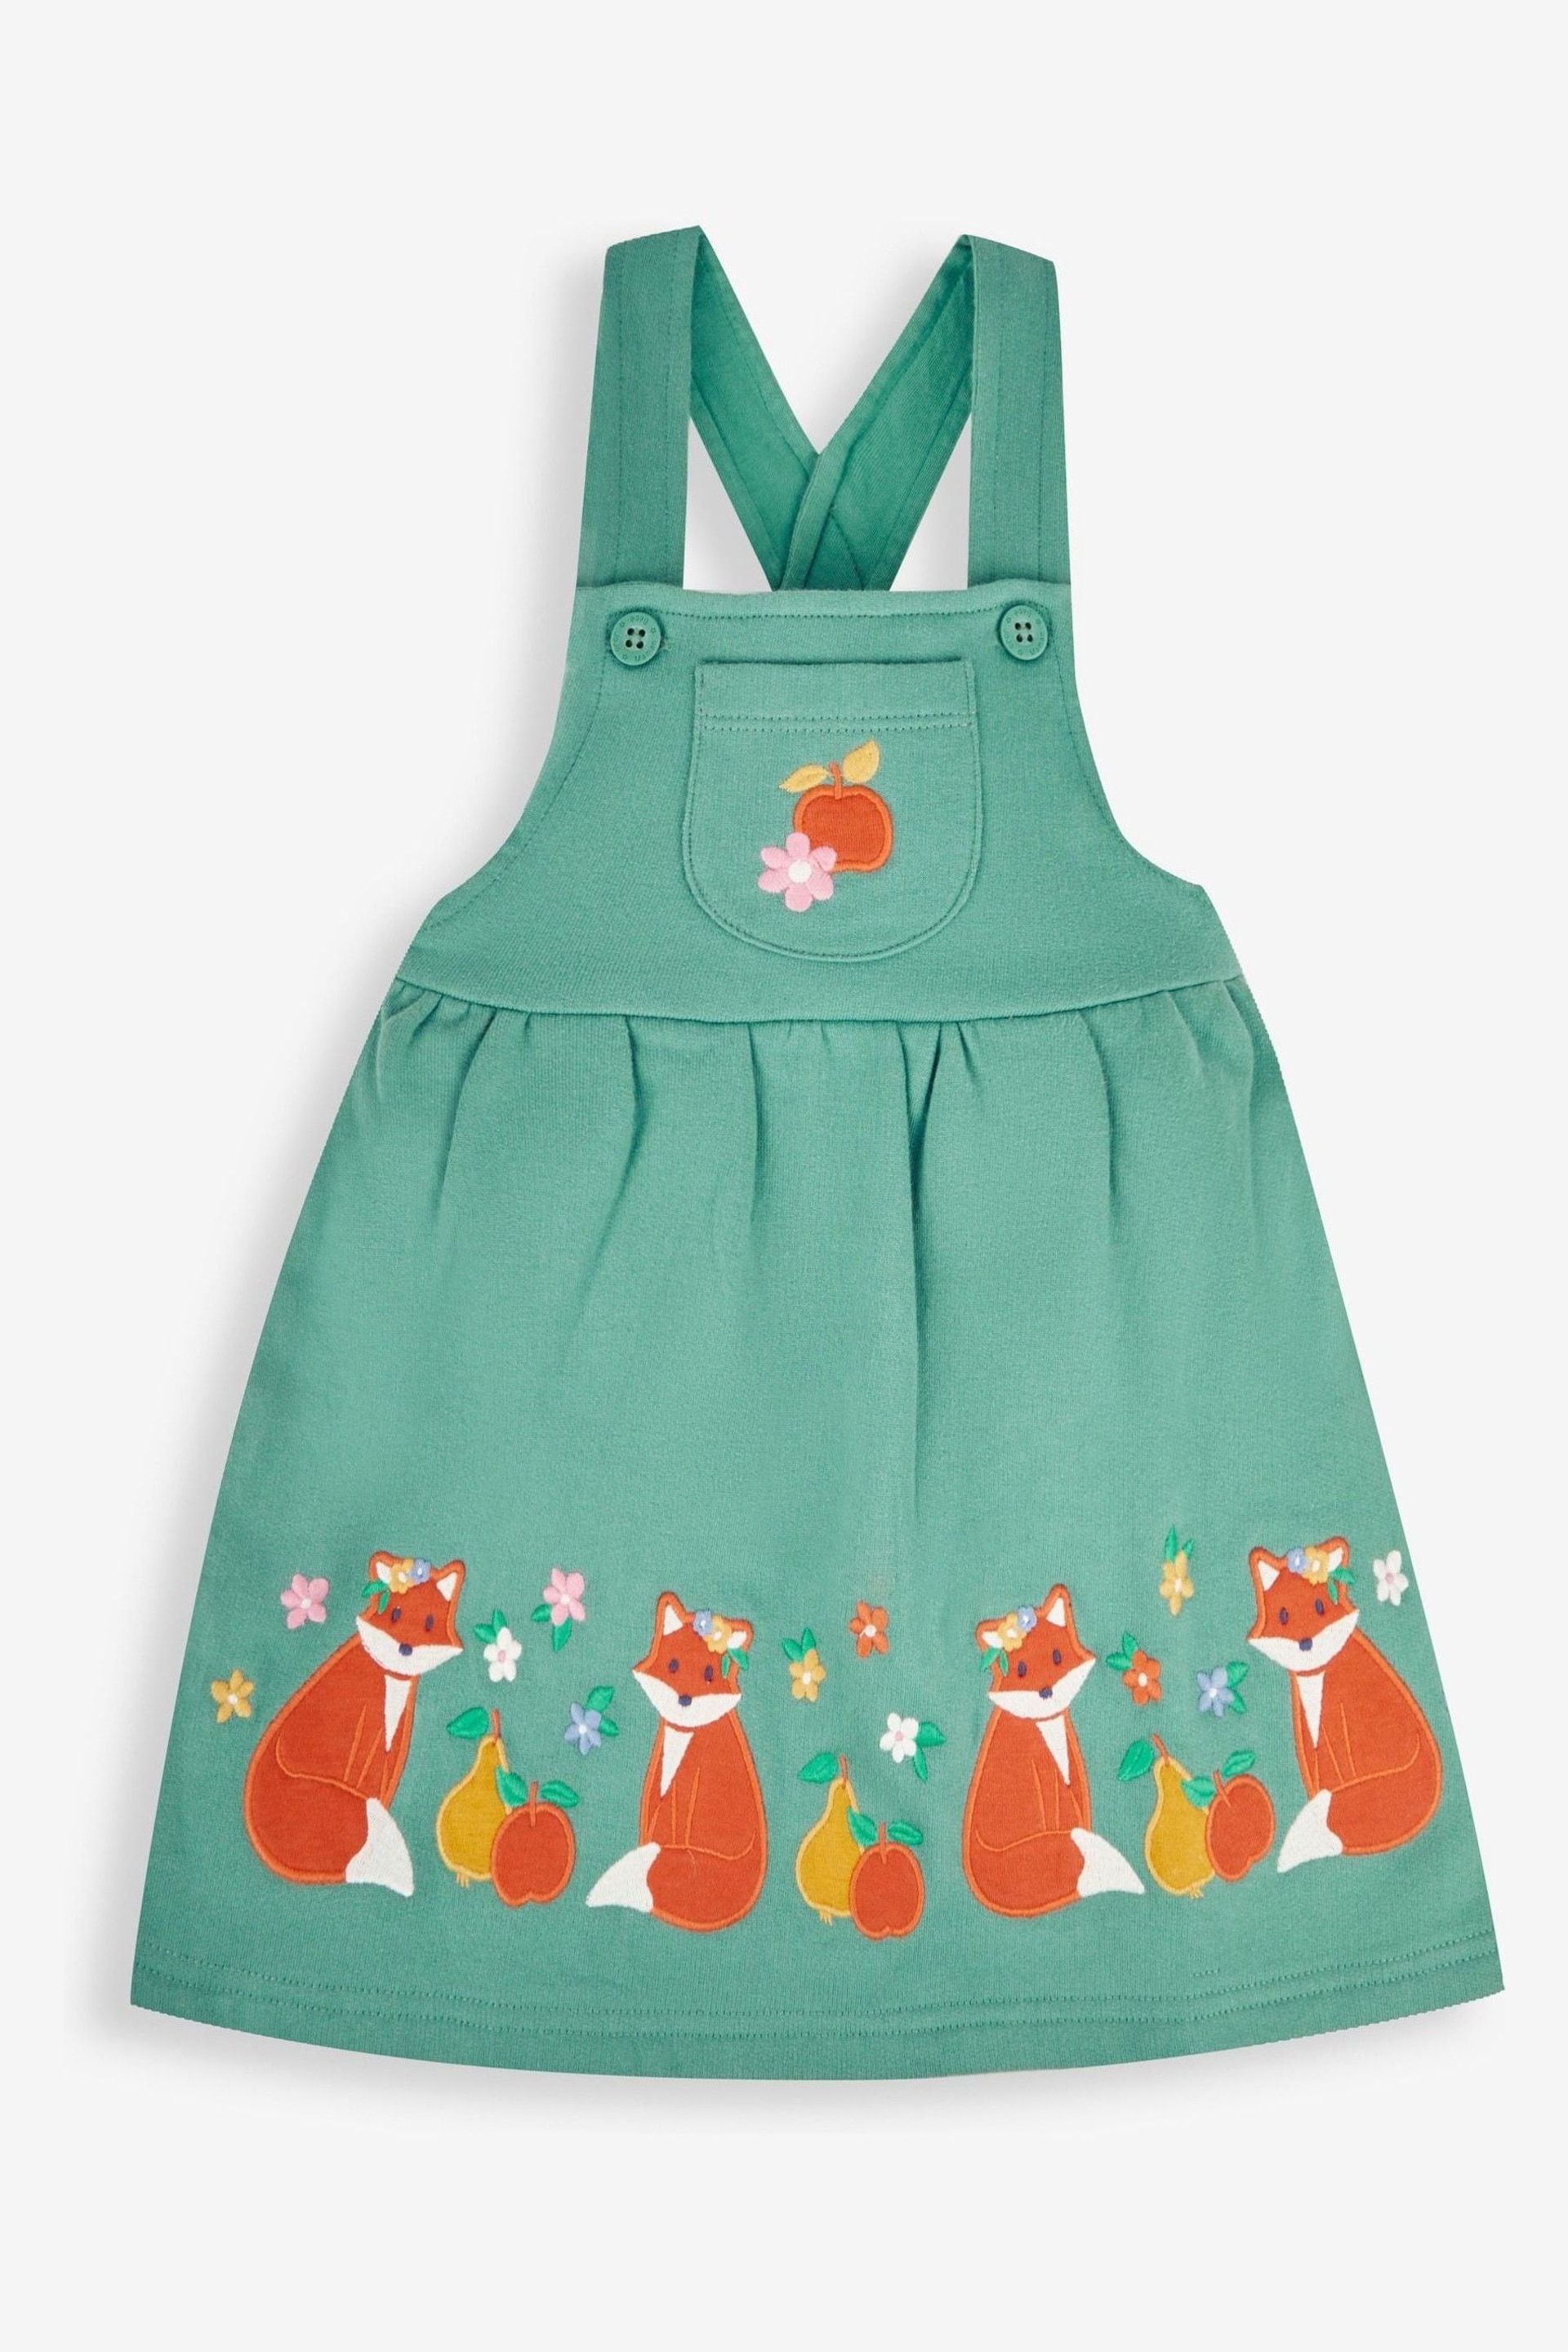 JoJo Maman Bébé Green Fox & Fruit Girls' 2-Piece Appliqué Pinafore Dress & Top Set - Image 2 of 6